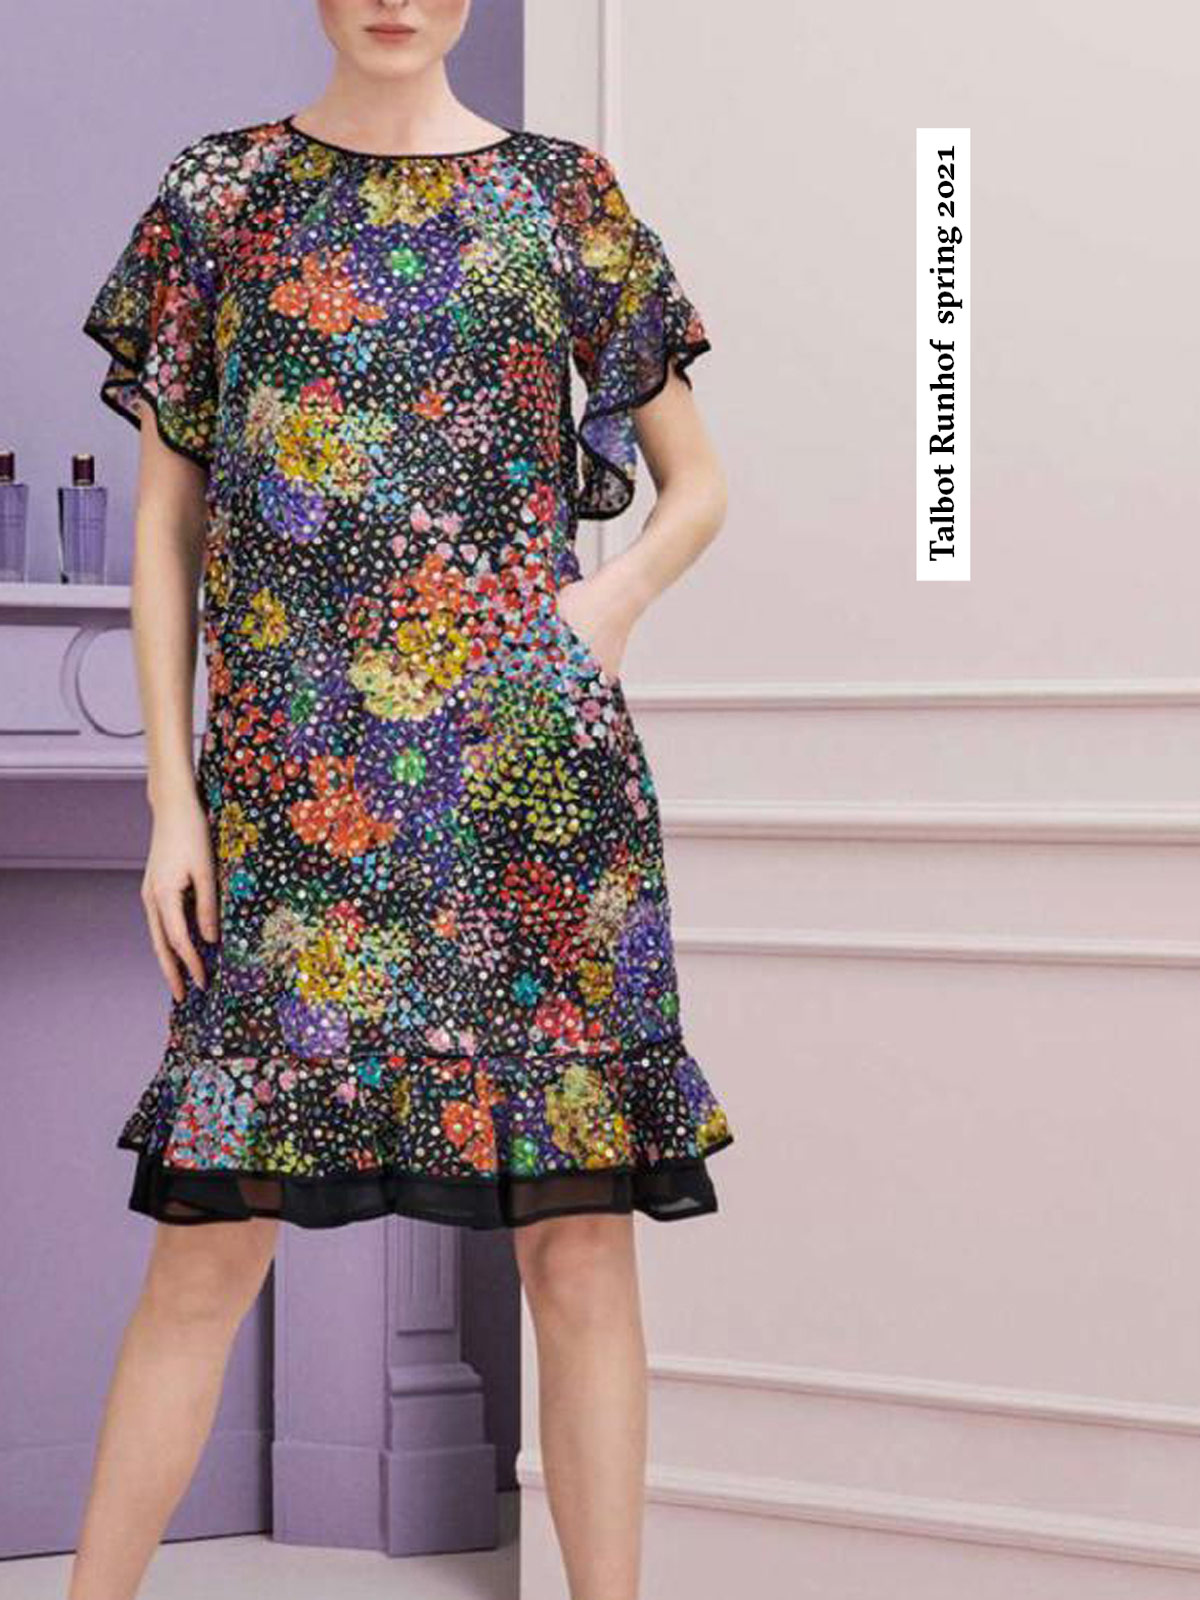 textildesign-entwurf-textileprint-druck-fashion-mode-textileforfashion